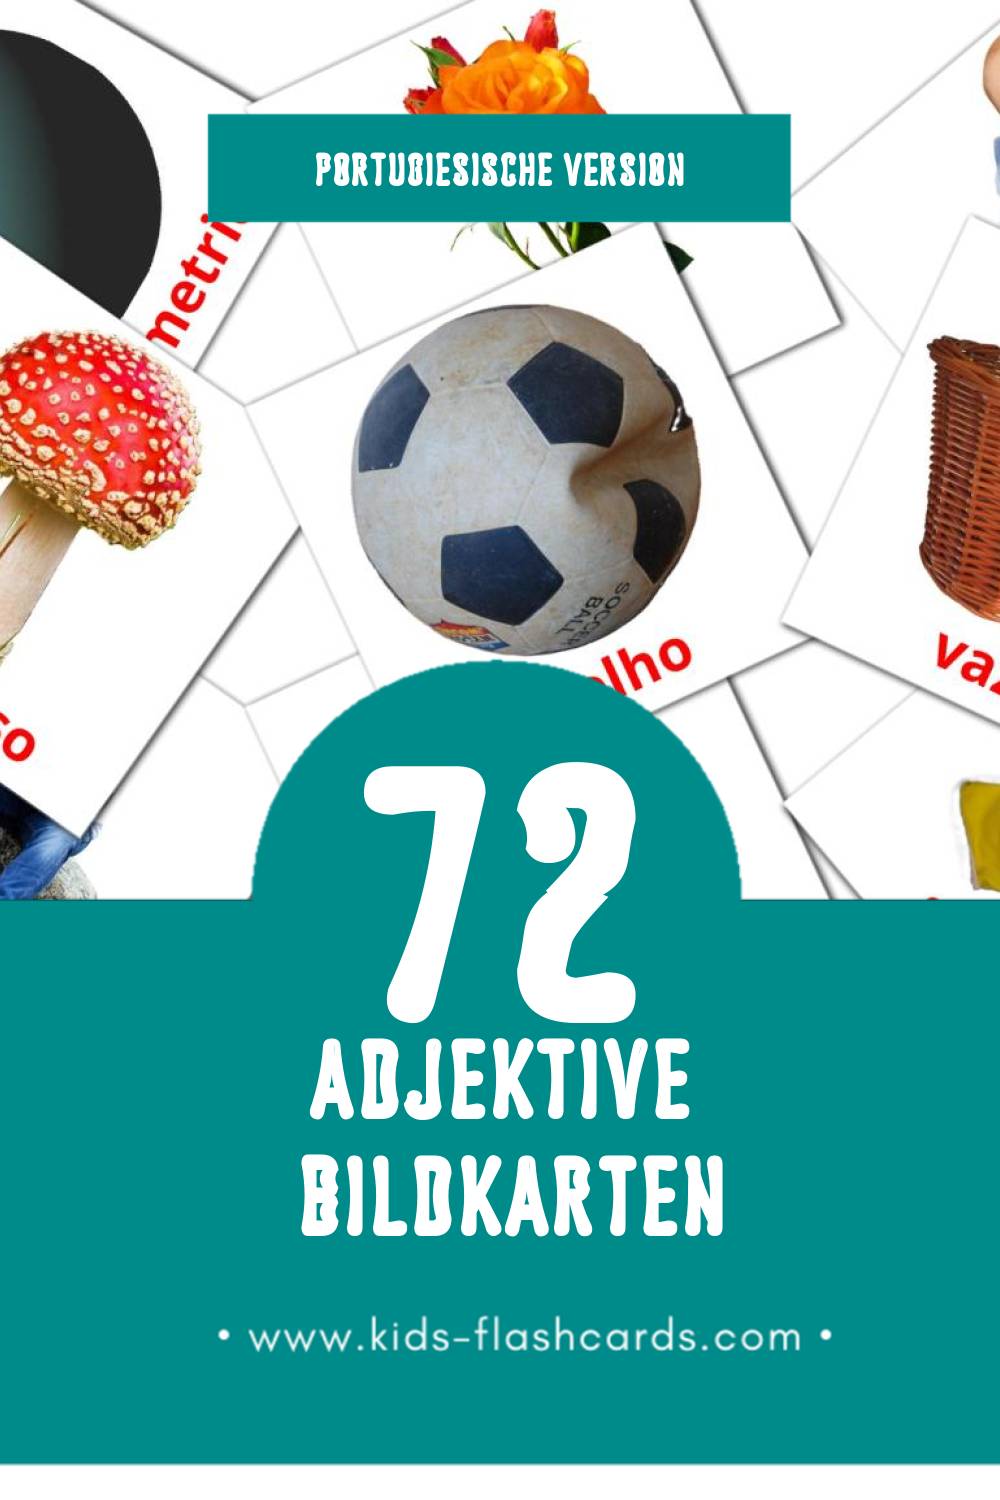 Visual Adjetivos Flashcards für Kleinkinder (72 Karten in Portugiesisch)